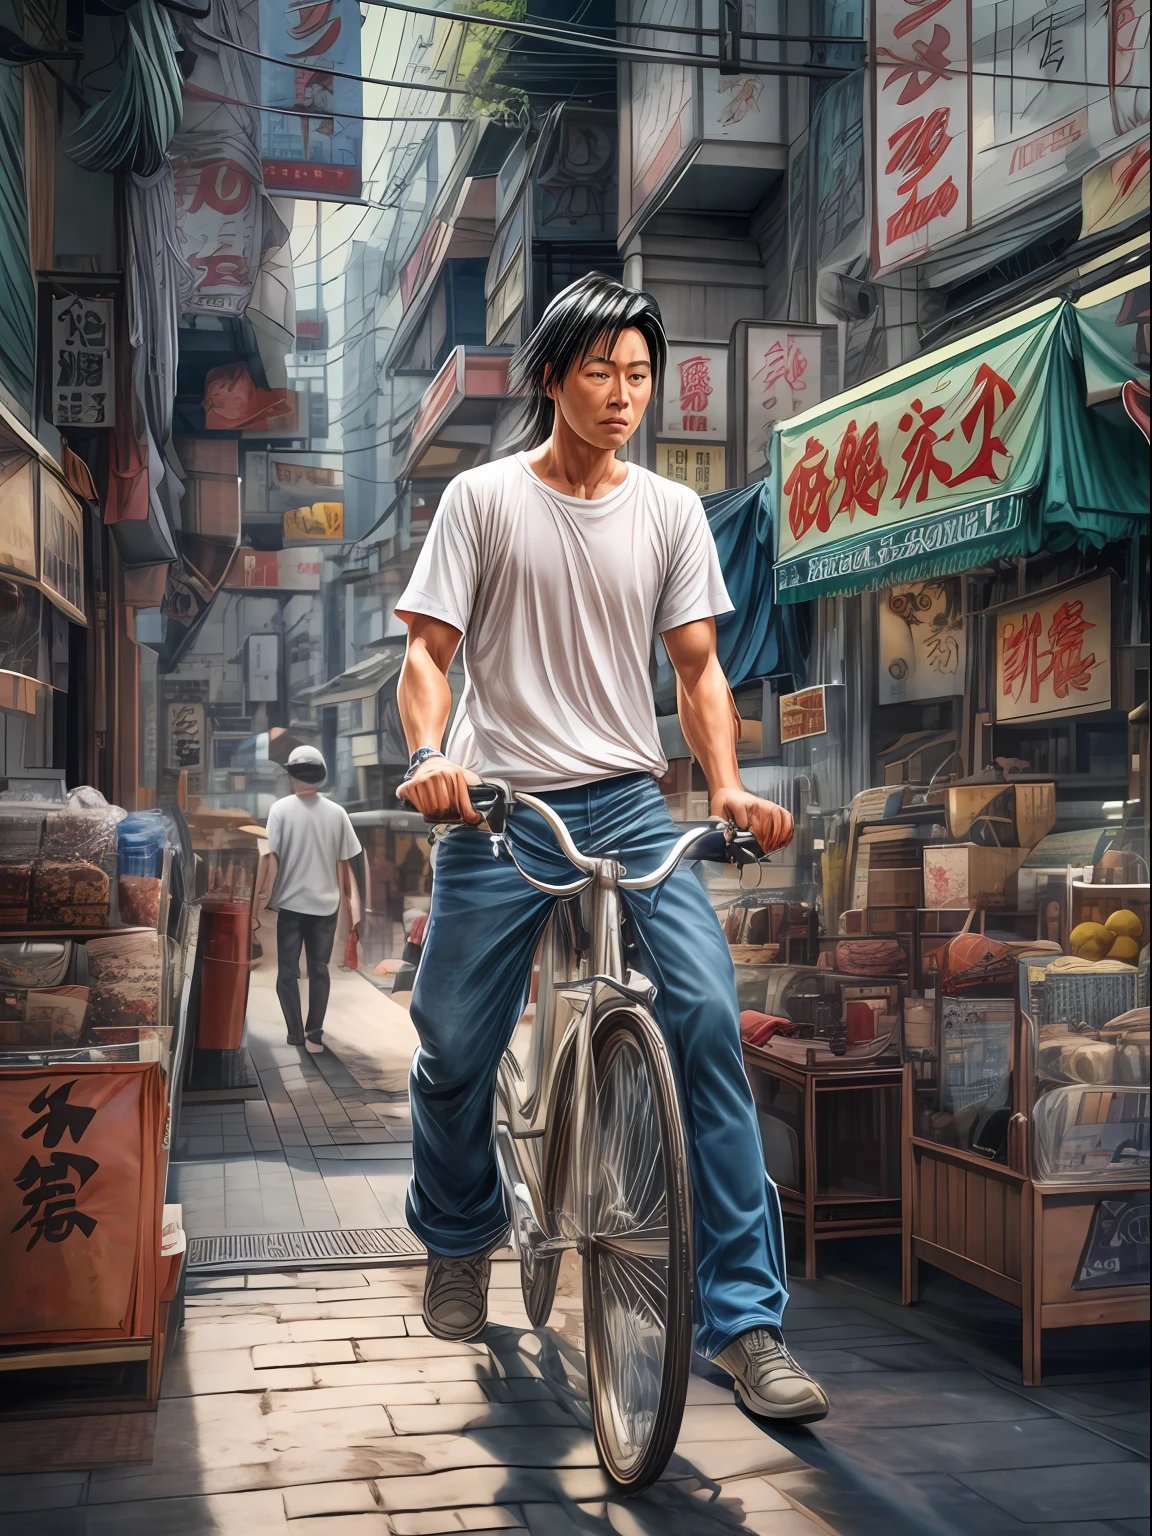 Кинематографическая фотореалистичная цветная цифровая живопись на талии Кинтаро Оэ, странствующего ученика аниме «Золотой мальчик», носит белую футболку., синие джинсовые брюки, очки для езды на велосипеде в стиле ретро, с любопытством ходит по тротуару Токио, детальное лицо, безумно подробно и запутанно, четкий, резкий и ясный, объемное освещение, Сверхвысокое разрешение, Шедевры гиперреалистичных работ Тацуи Эгавы, Кинематографическая сцена Хиромасы Огуры., центрированный, Профессиональная цветокоррекция Кеннета Хайнса-младшего..